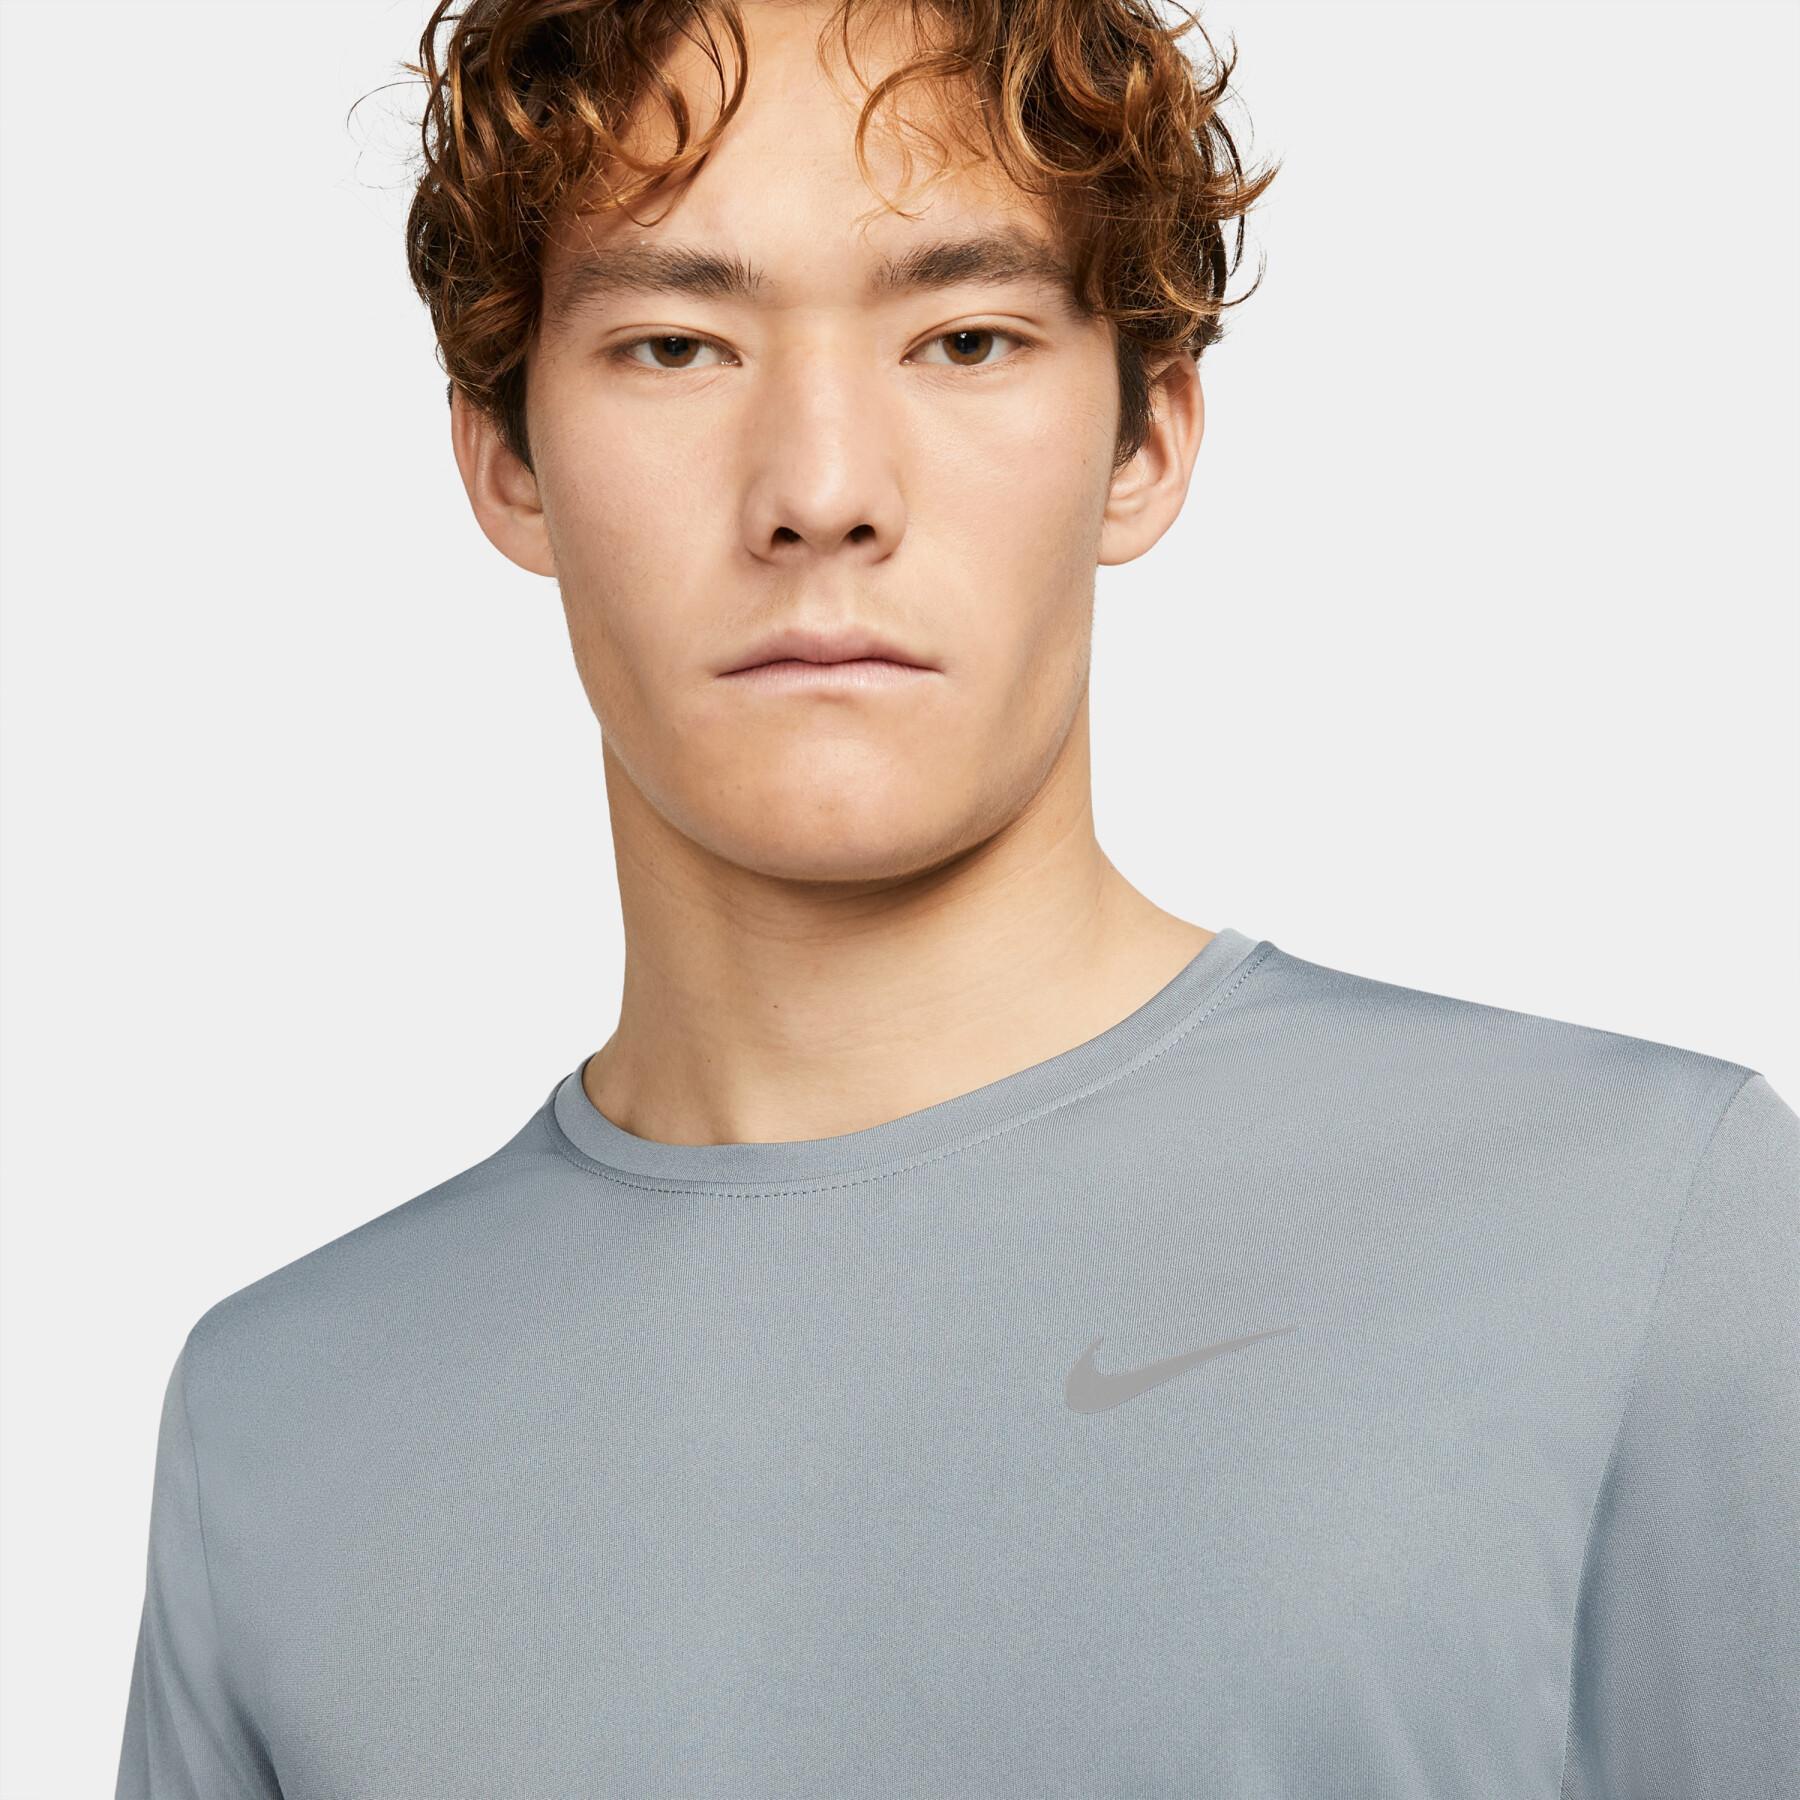 Maglietta Nike Dri-Fit Miler